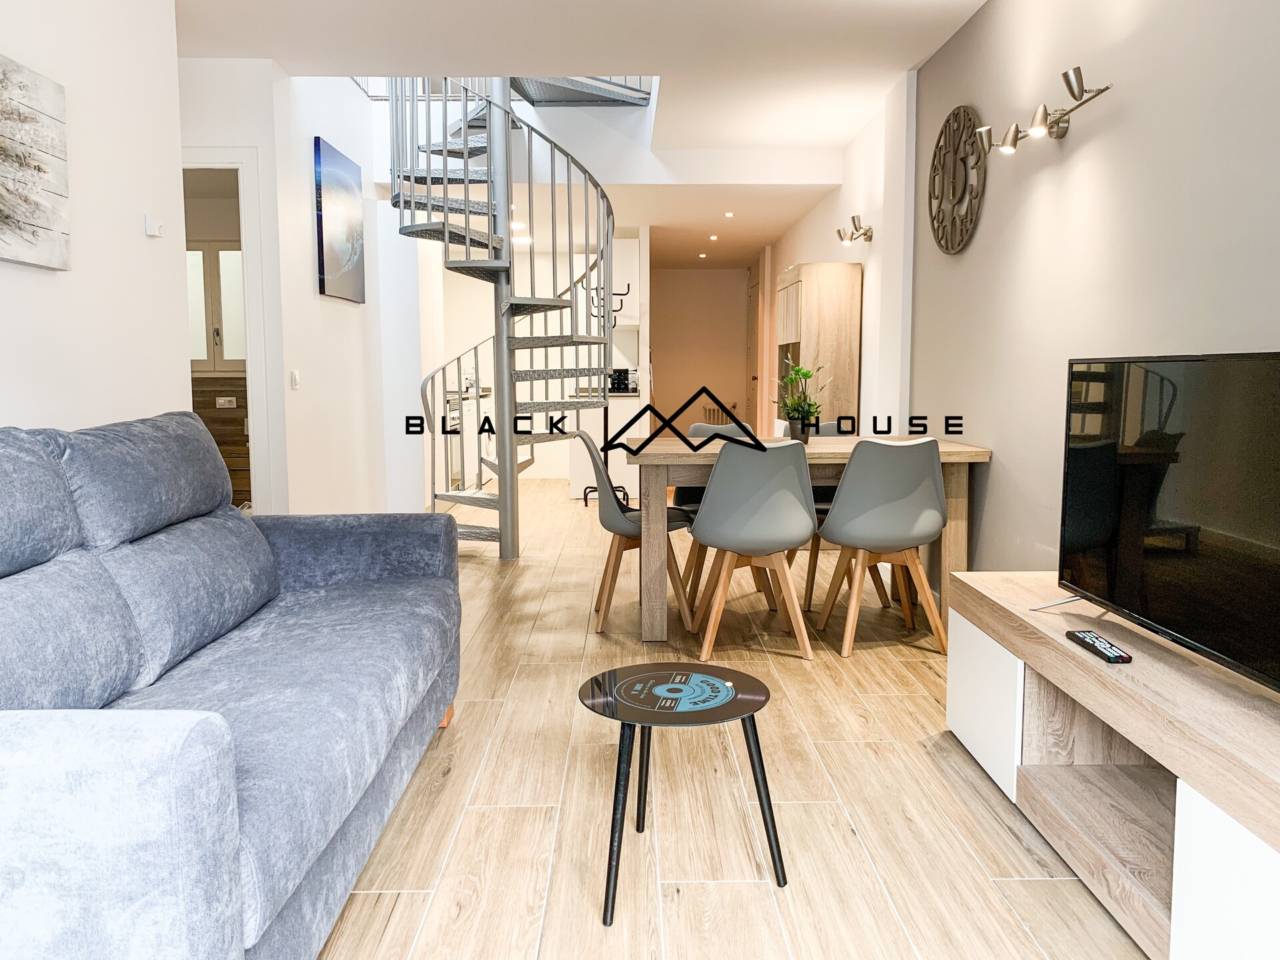 Ensemble de 4 appartements rénovés, meublés et équipés à vendre dans le centre d'Andorre-la-Vieille.